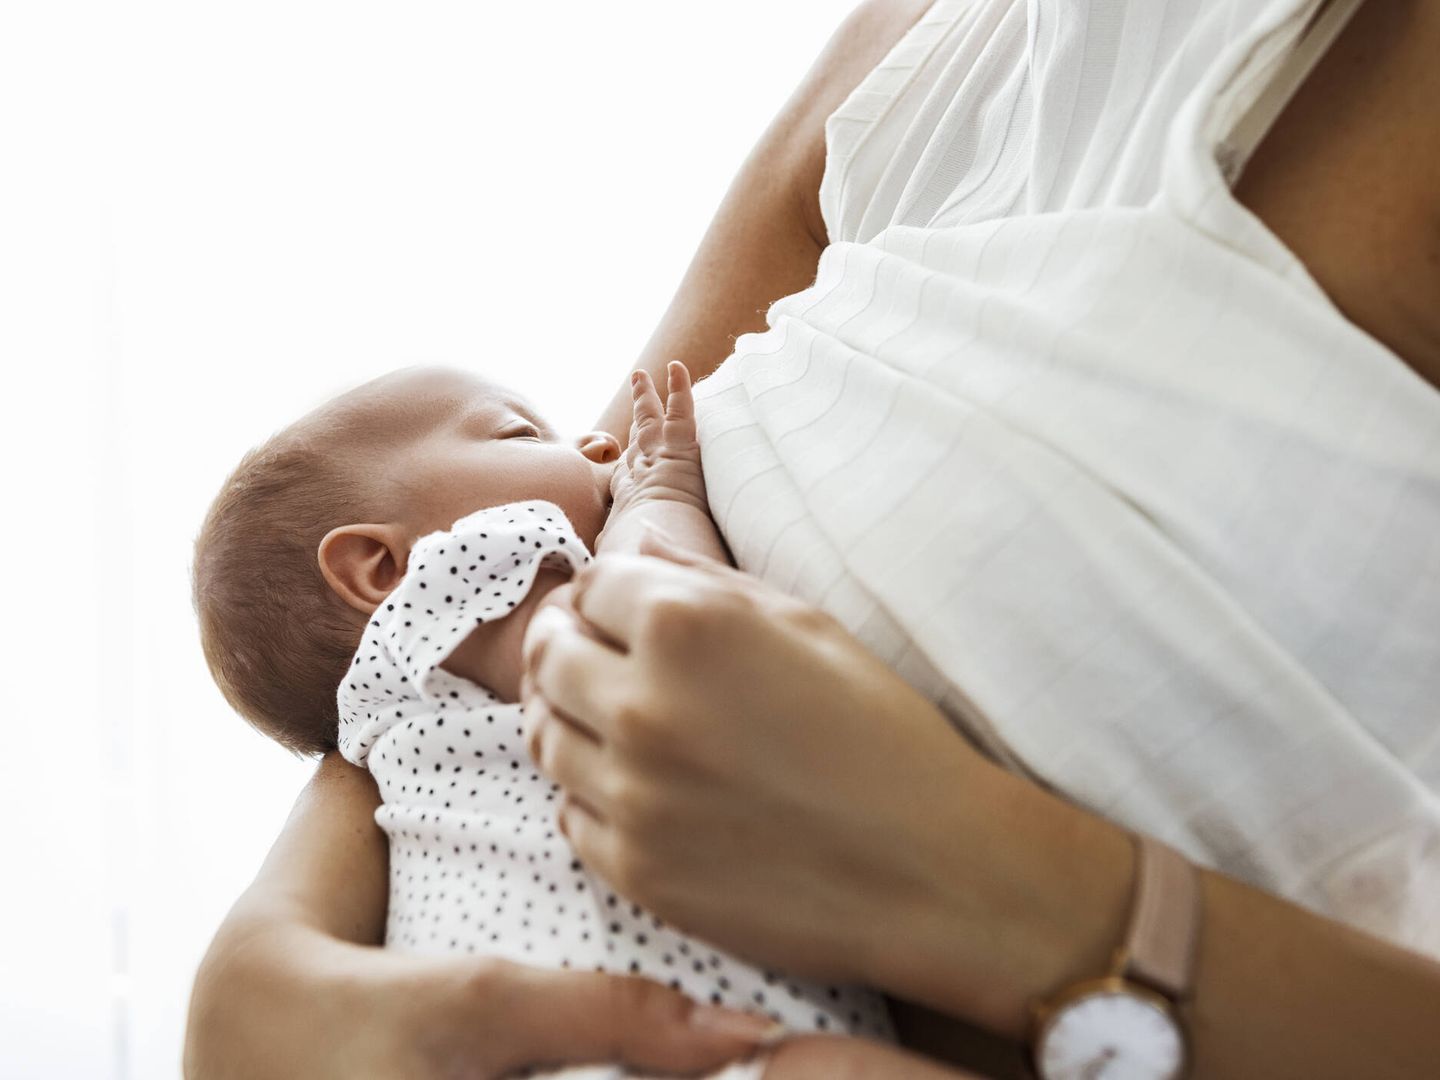 La necesidad de hierro aumenta durante la lactancia materna. (iStock)